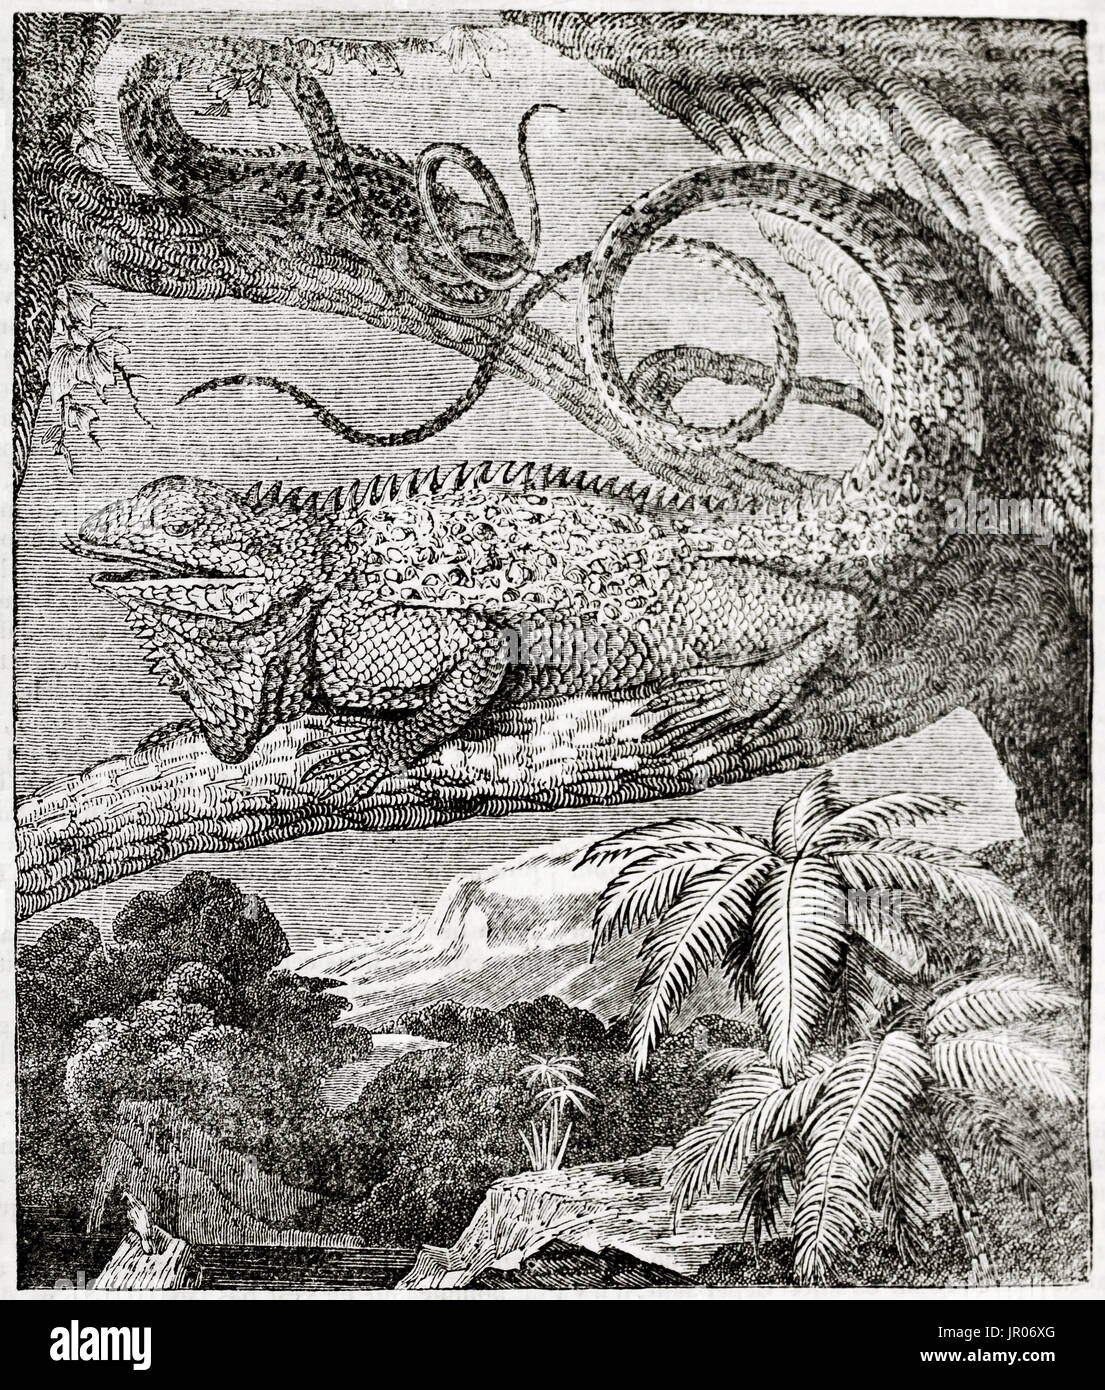 Alte Darstellung der Leguan (Iguana Iguana). Von unbekannter Autor veröffentlicht am Magasin Pittoresque, Paris, 1833. Stockfoto